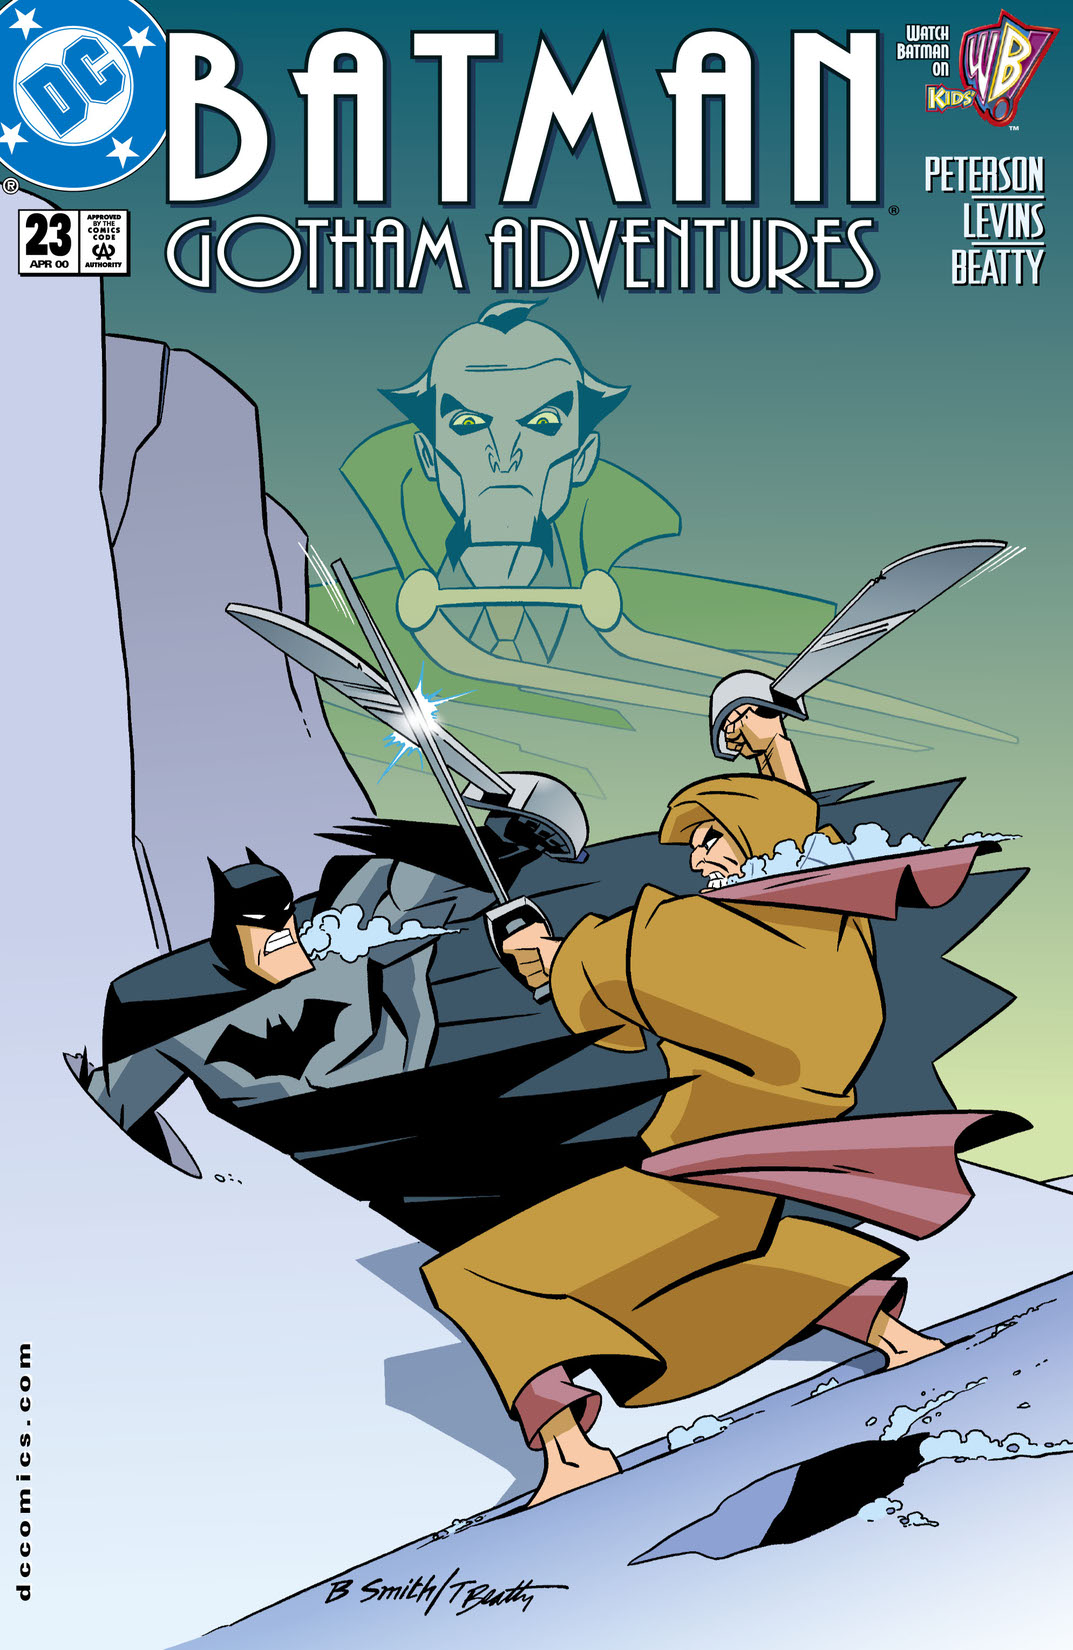 Batman: Gotham Adventures #23 preview images